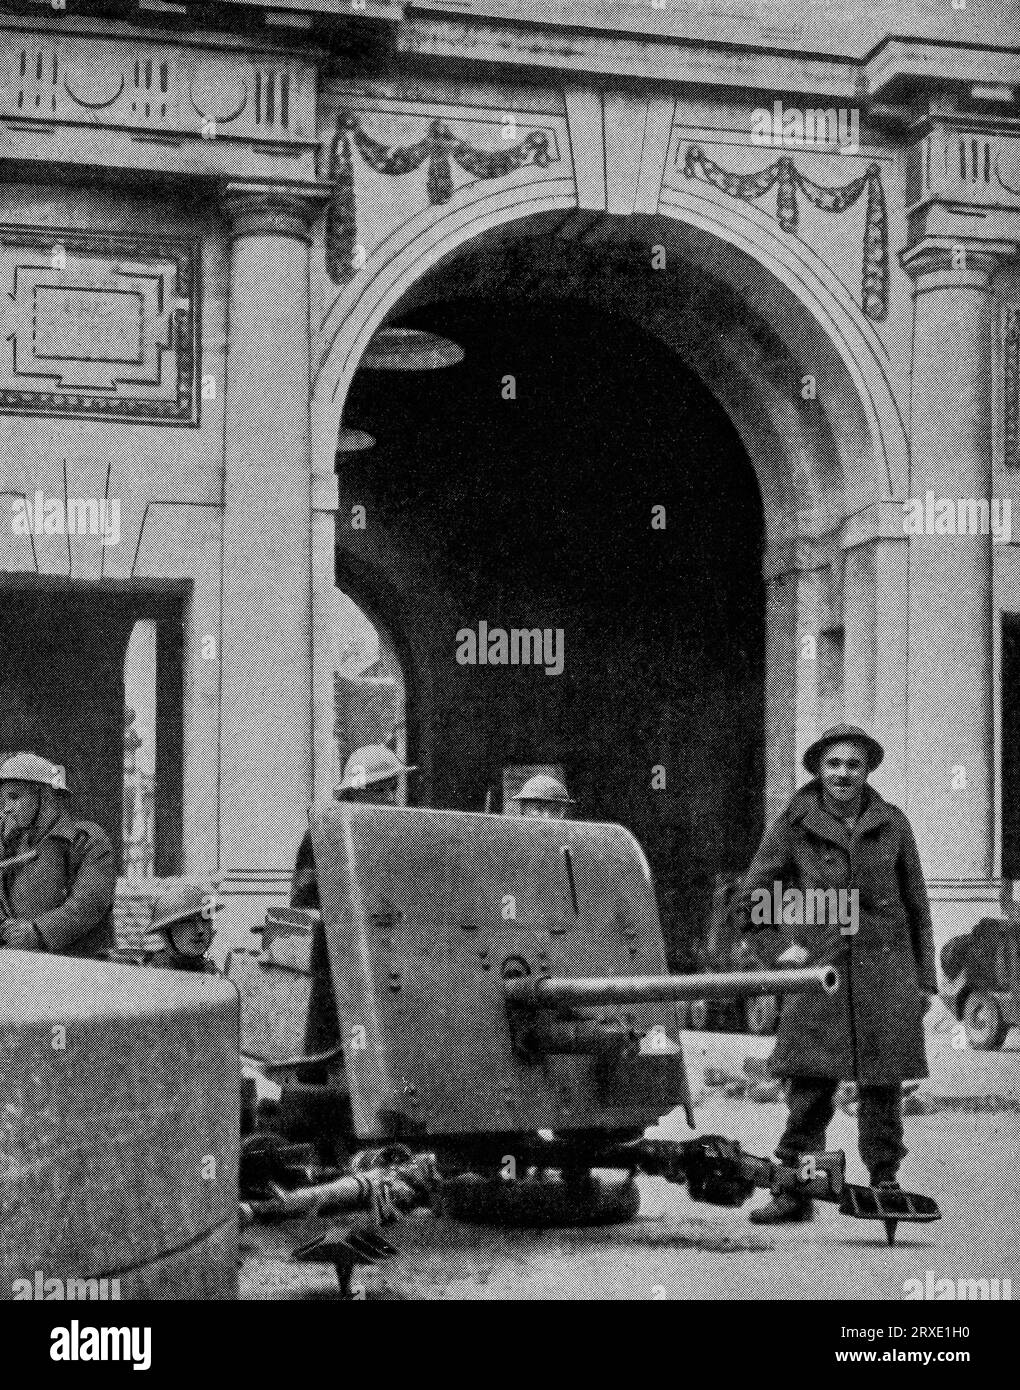 Soldaten der British Expeditionary Force (BEF) besetzen Feldartillerie neben dem Menin-Tor in Ypern, Belgien im Mai 1940 vor dem Rückzug nach Dünkirchen in Frankreich, während der frühen Stadien des Zweiten Weltkriegs. Stockfoto